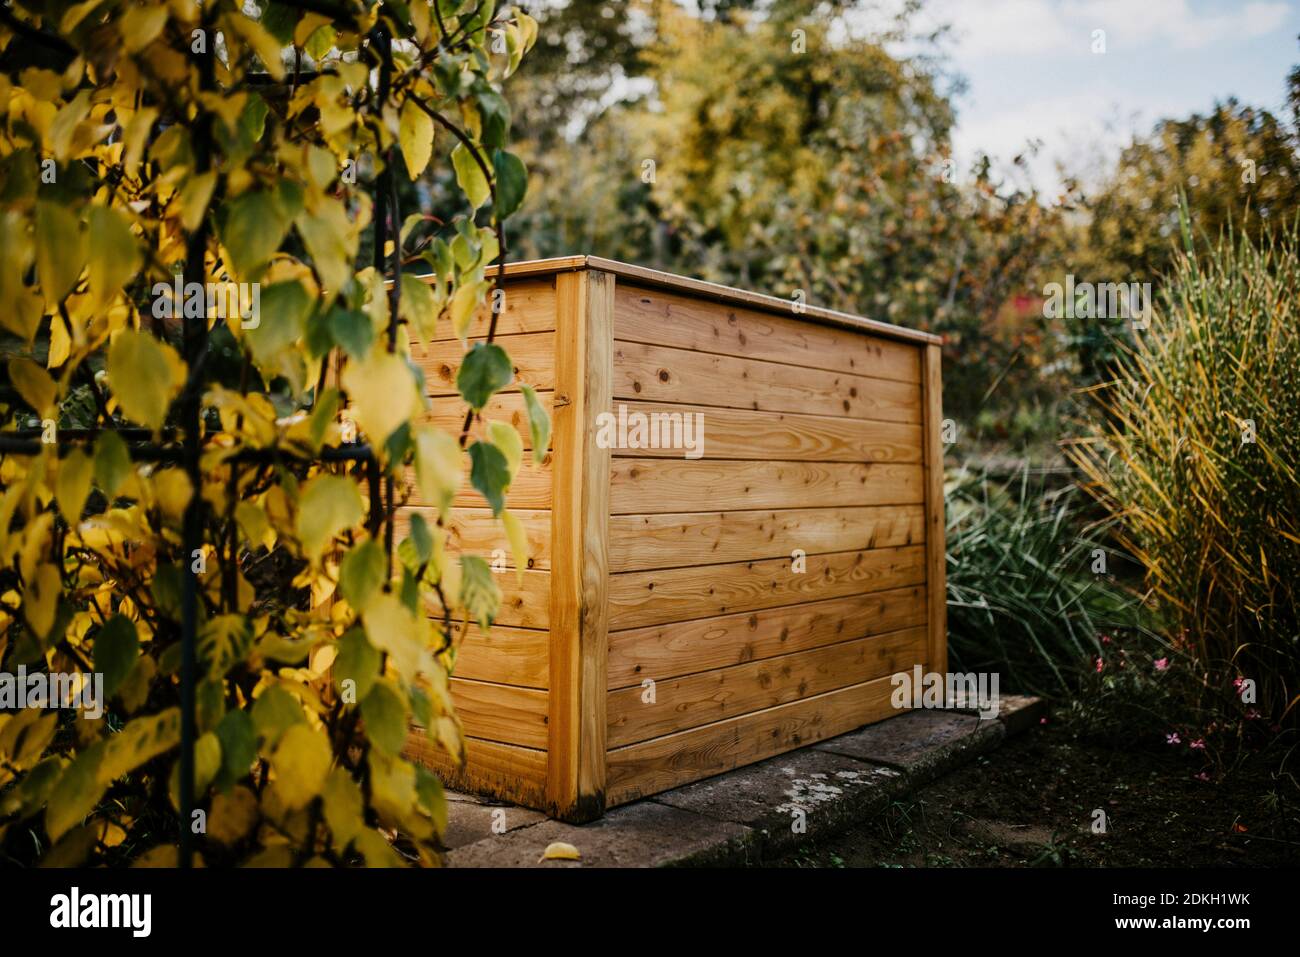 Raised bed, allotment garden, autumn Stock Photo